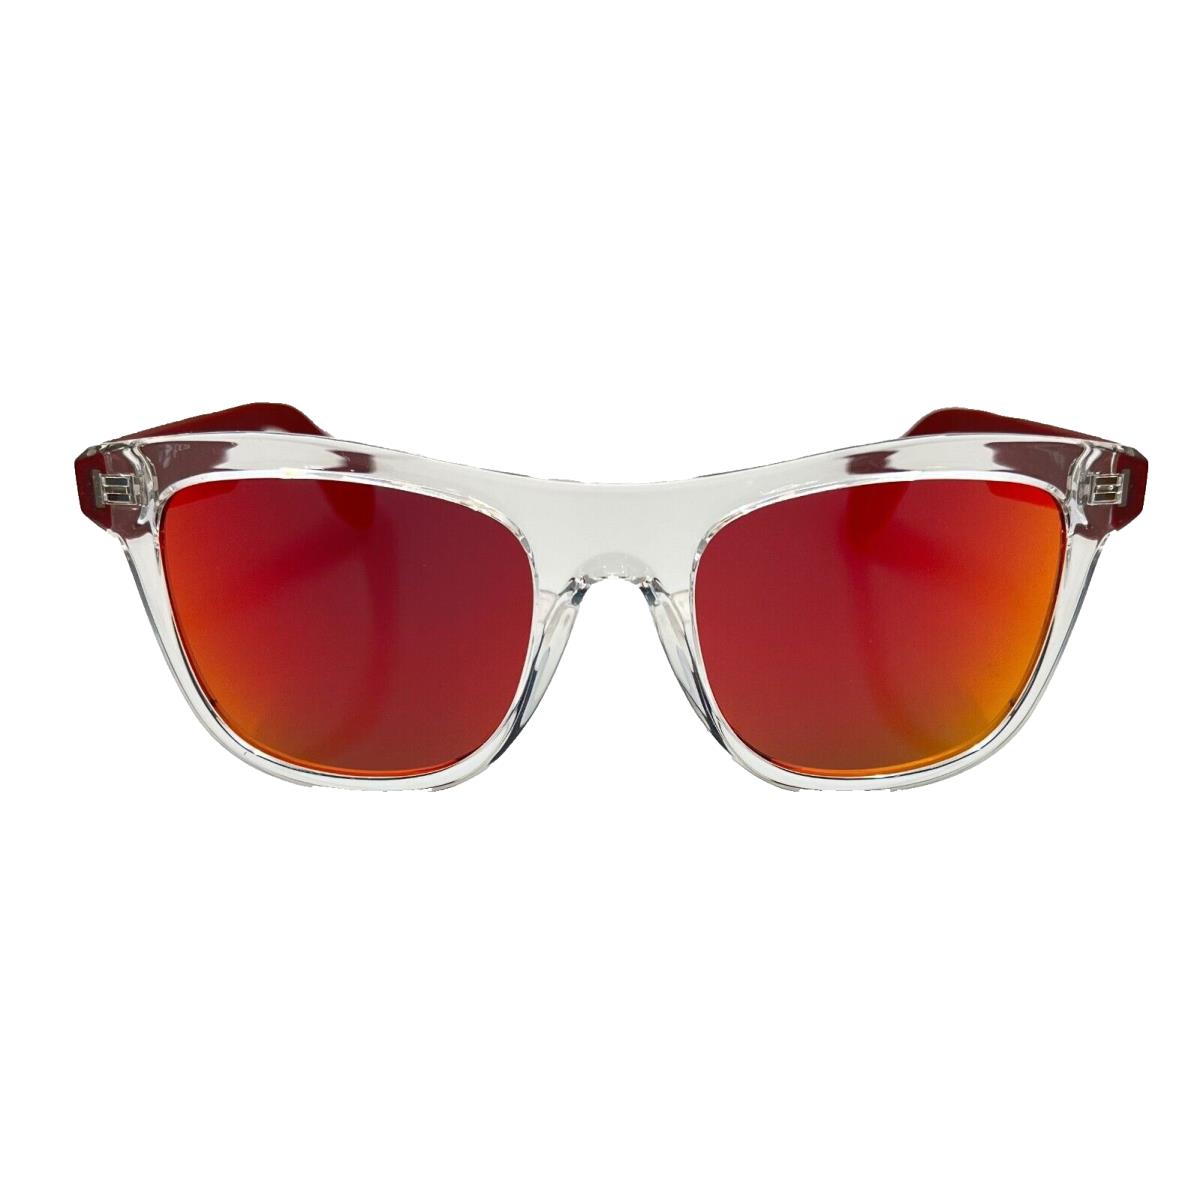 Adidas Originals - OR0057 26U 53/20/145 Crystal Sunglasses Case - Frame: , Lens: Red